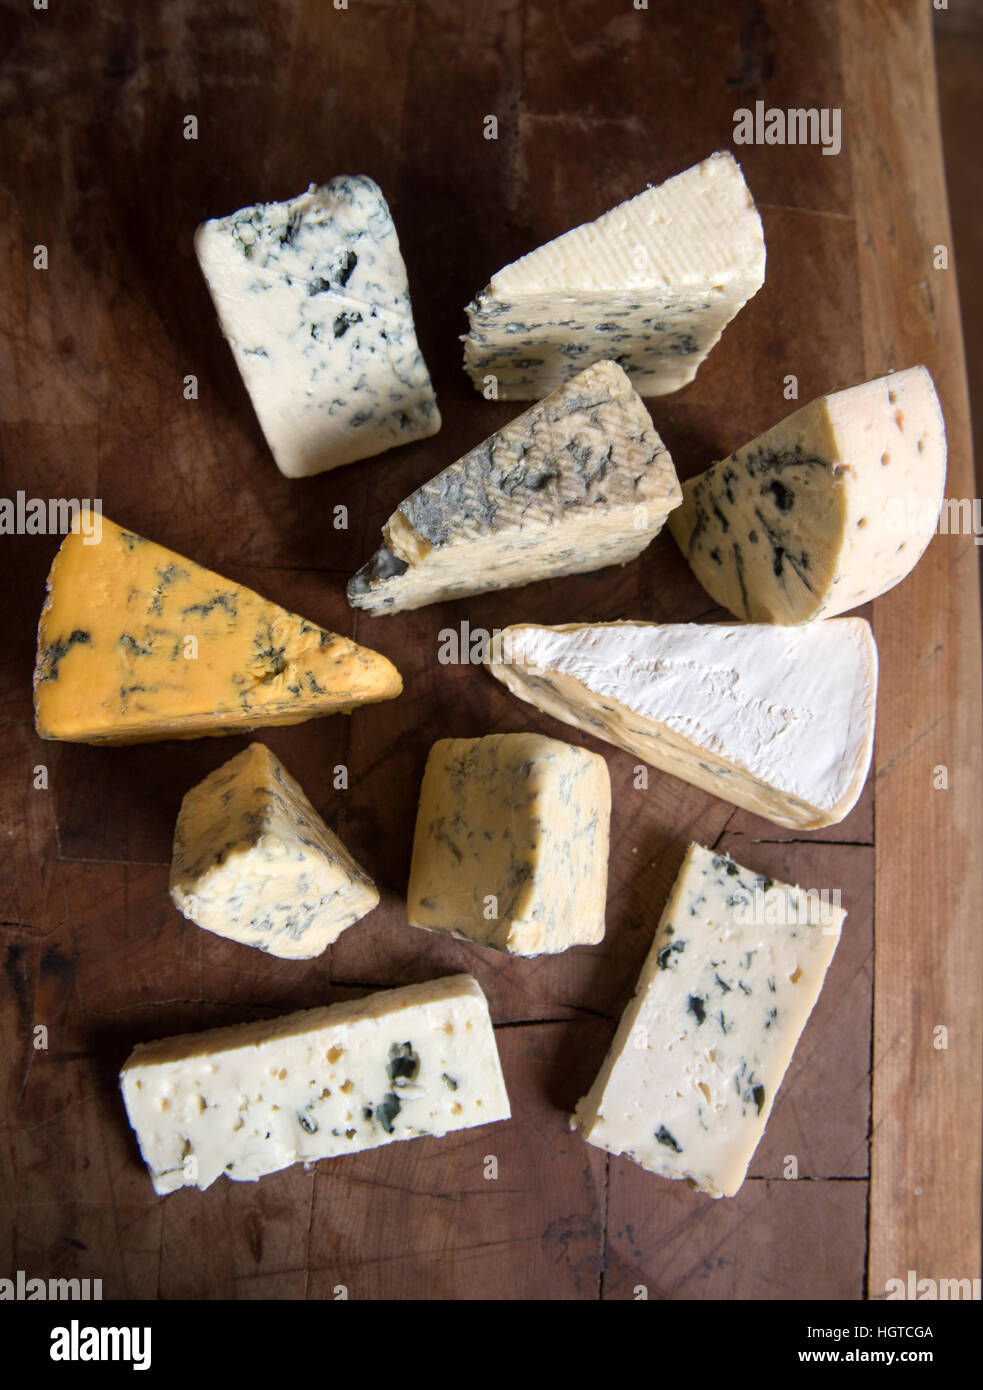 Una selezione della lingua inglese e continentale formaggi blu disposti su di un tagliere Foto Stock